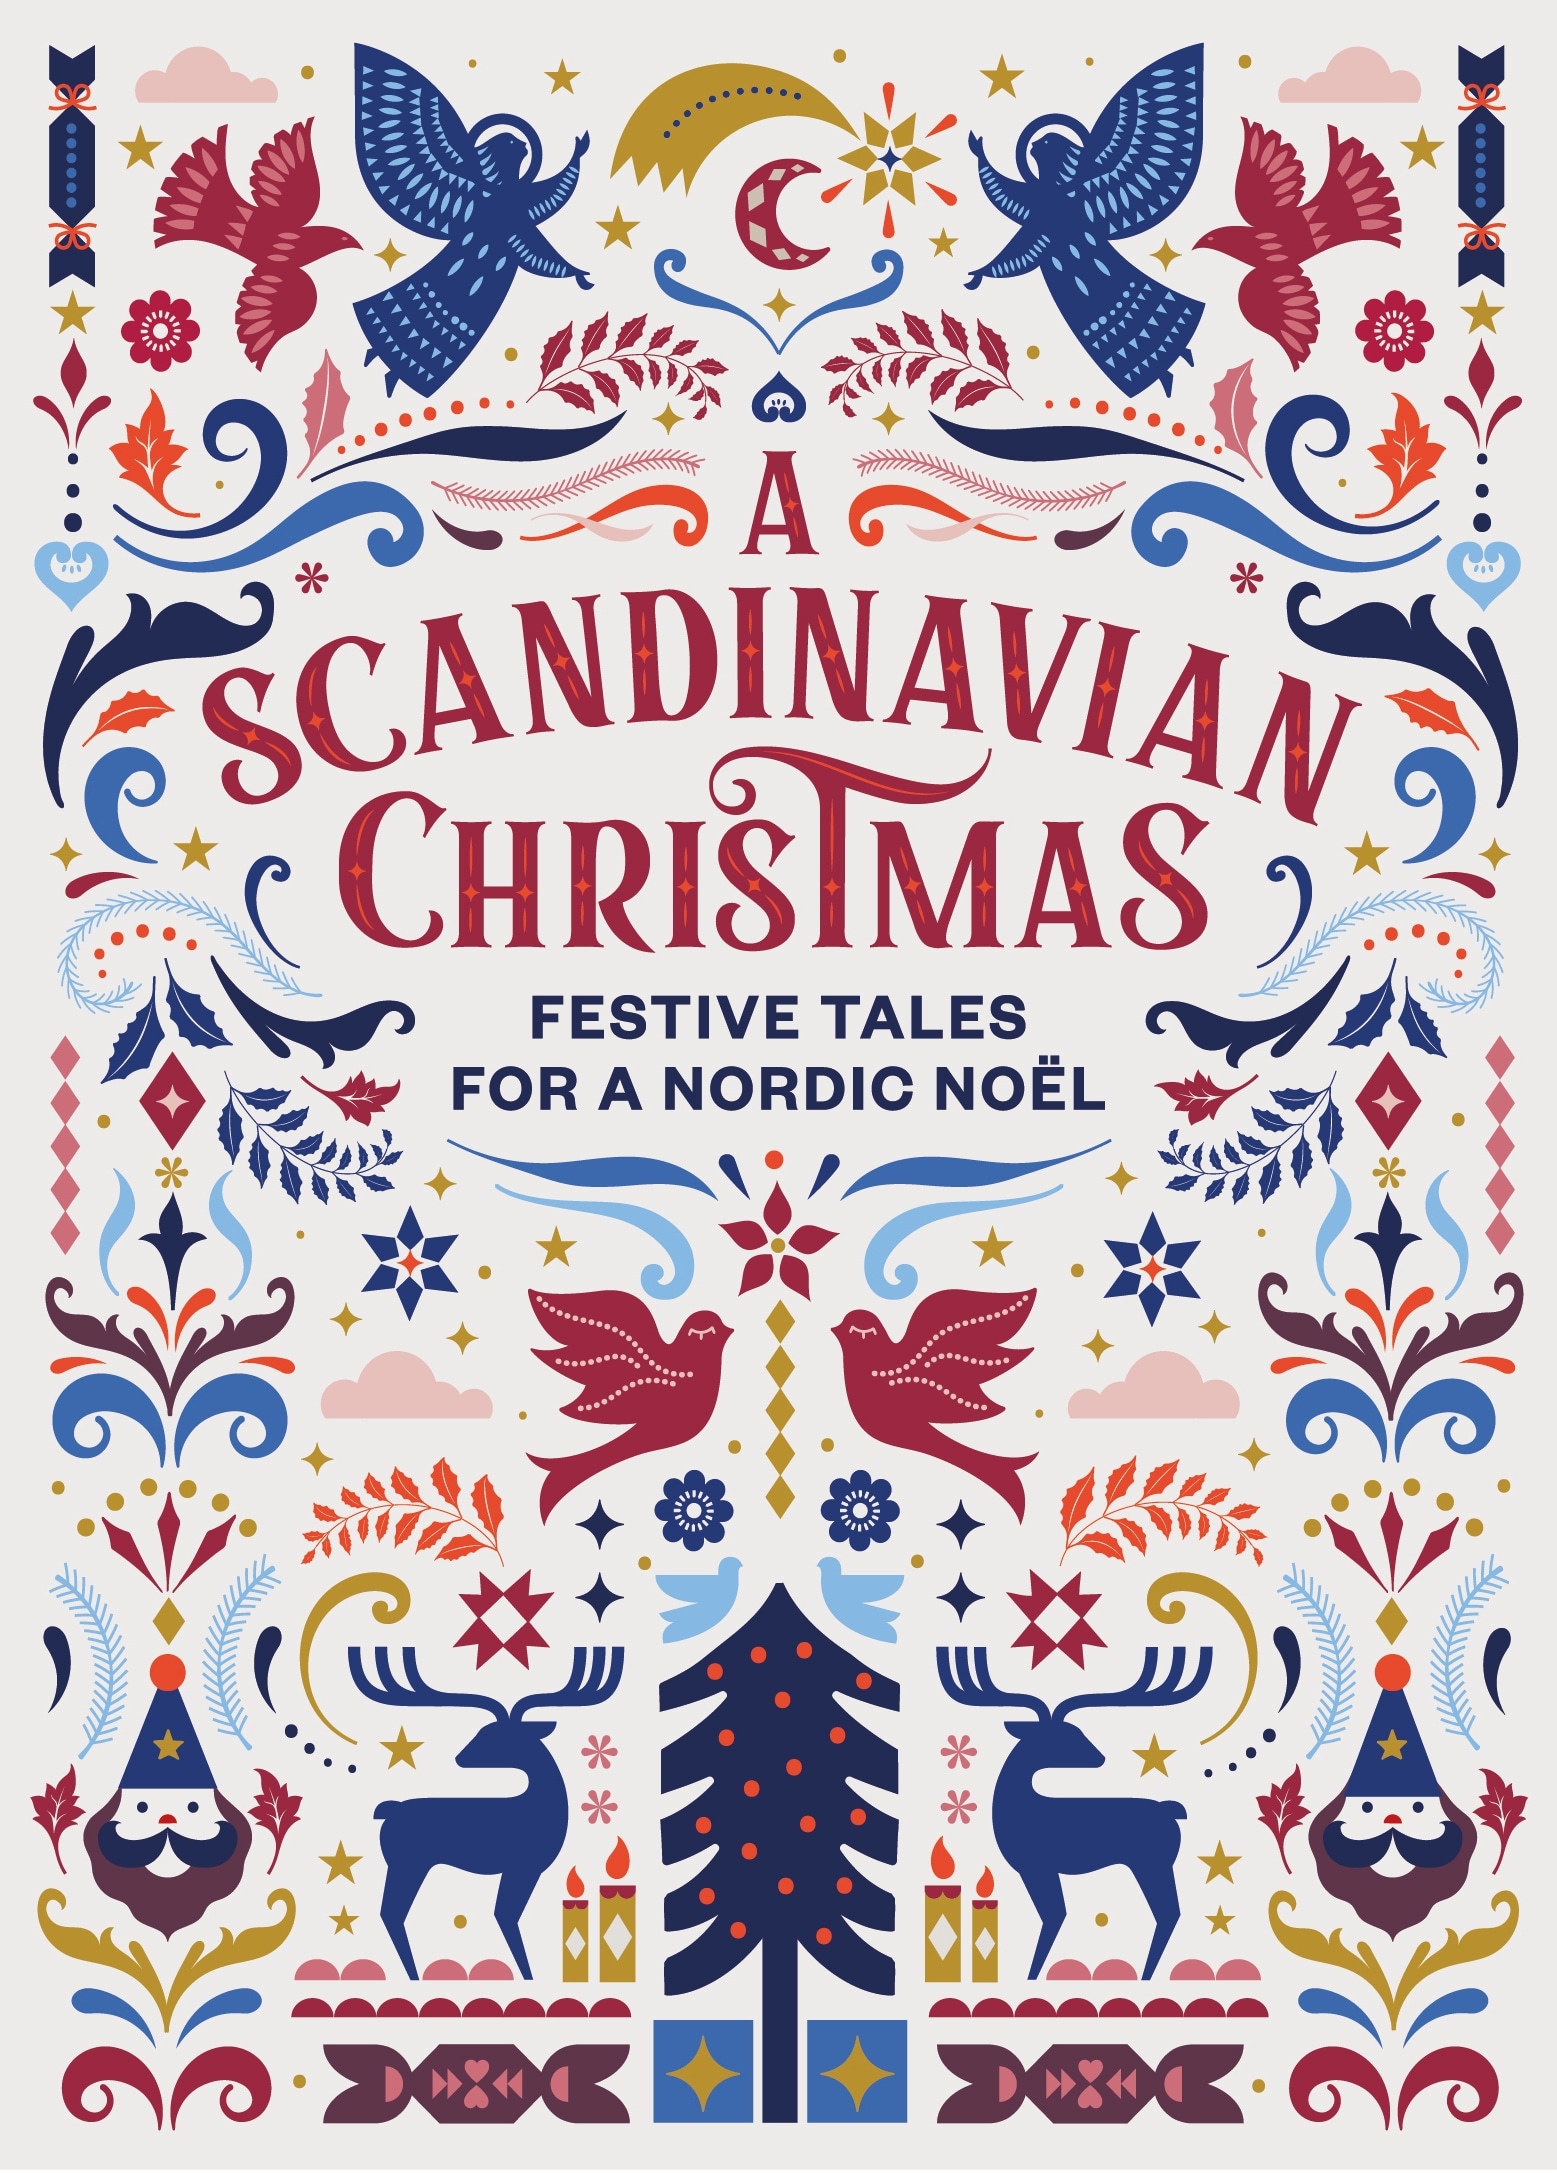 Book “A Scandinavian Christmas” by Hans Christian Andersen — October 21, 2021